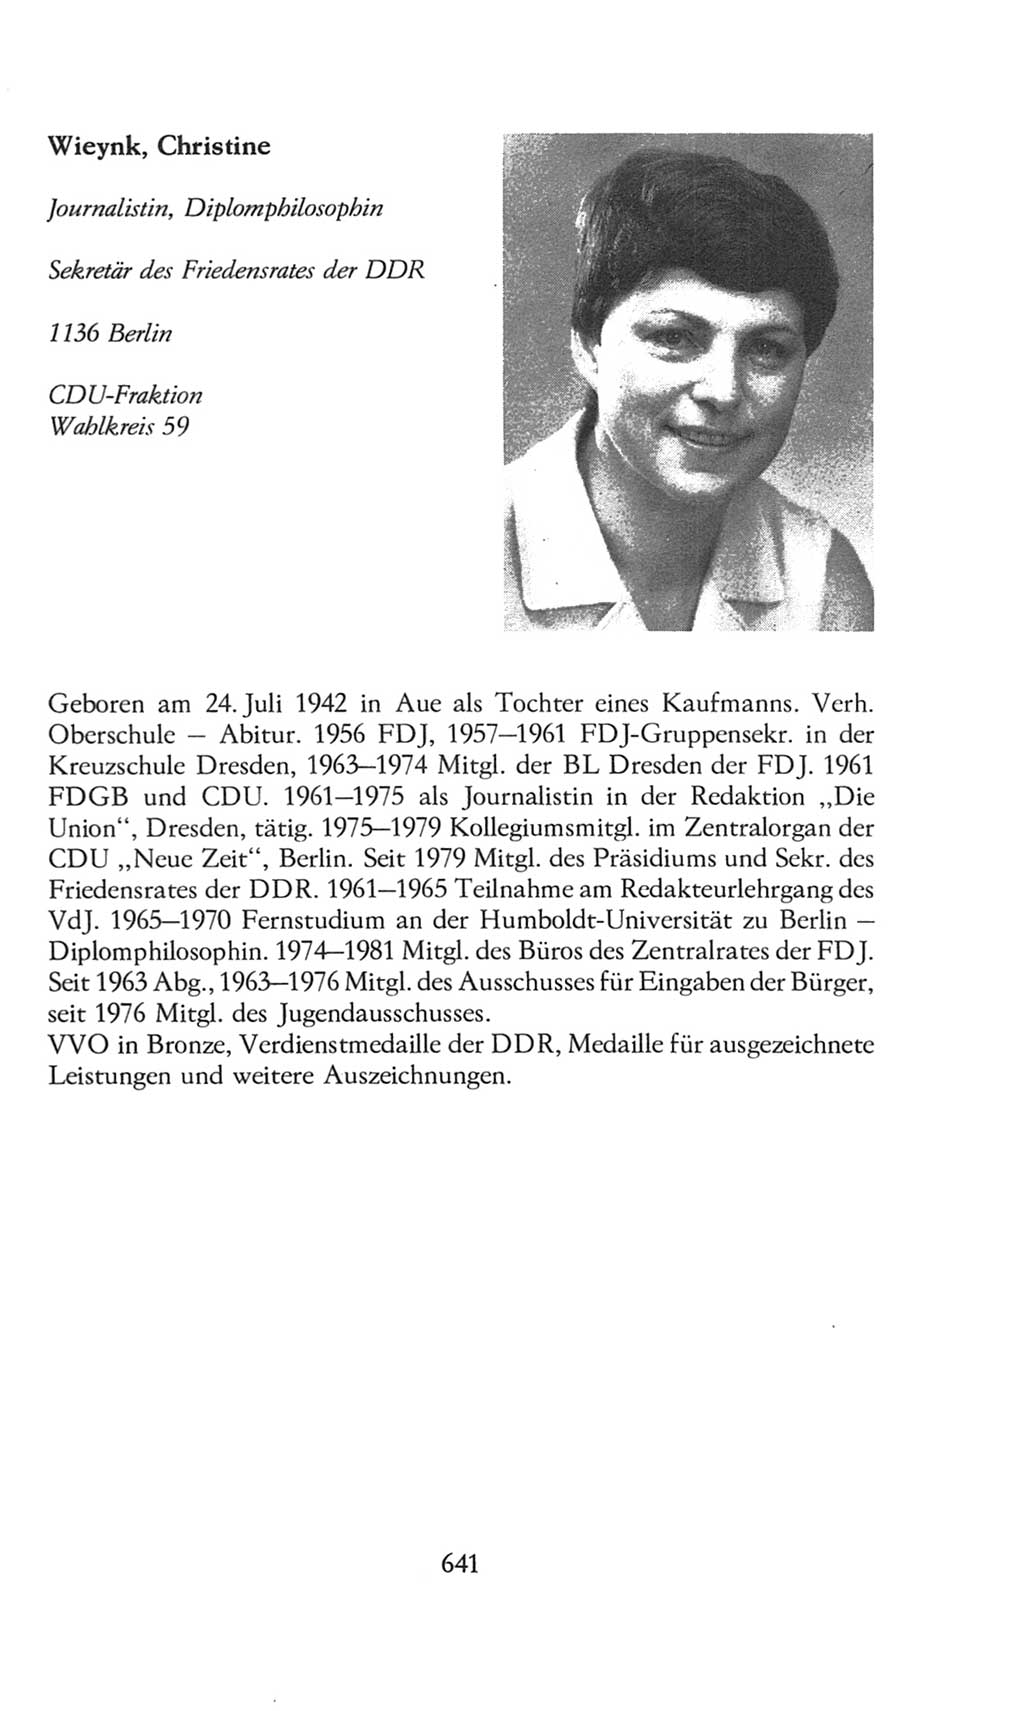 Volkskammer (VK) der Deutschen Demokratischen Republik (DDR), 8. Wahlperiode 1981-1986, Seite 641 (VK. DDR 8. WP. 1981-1986, S. 641)